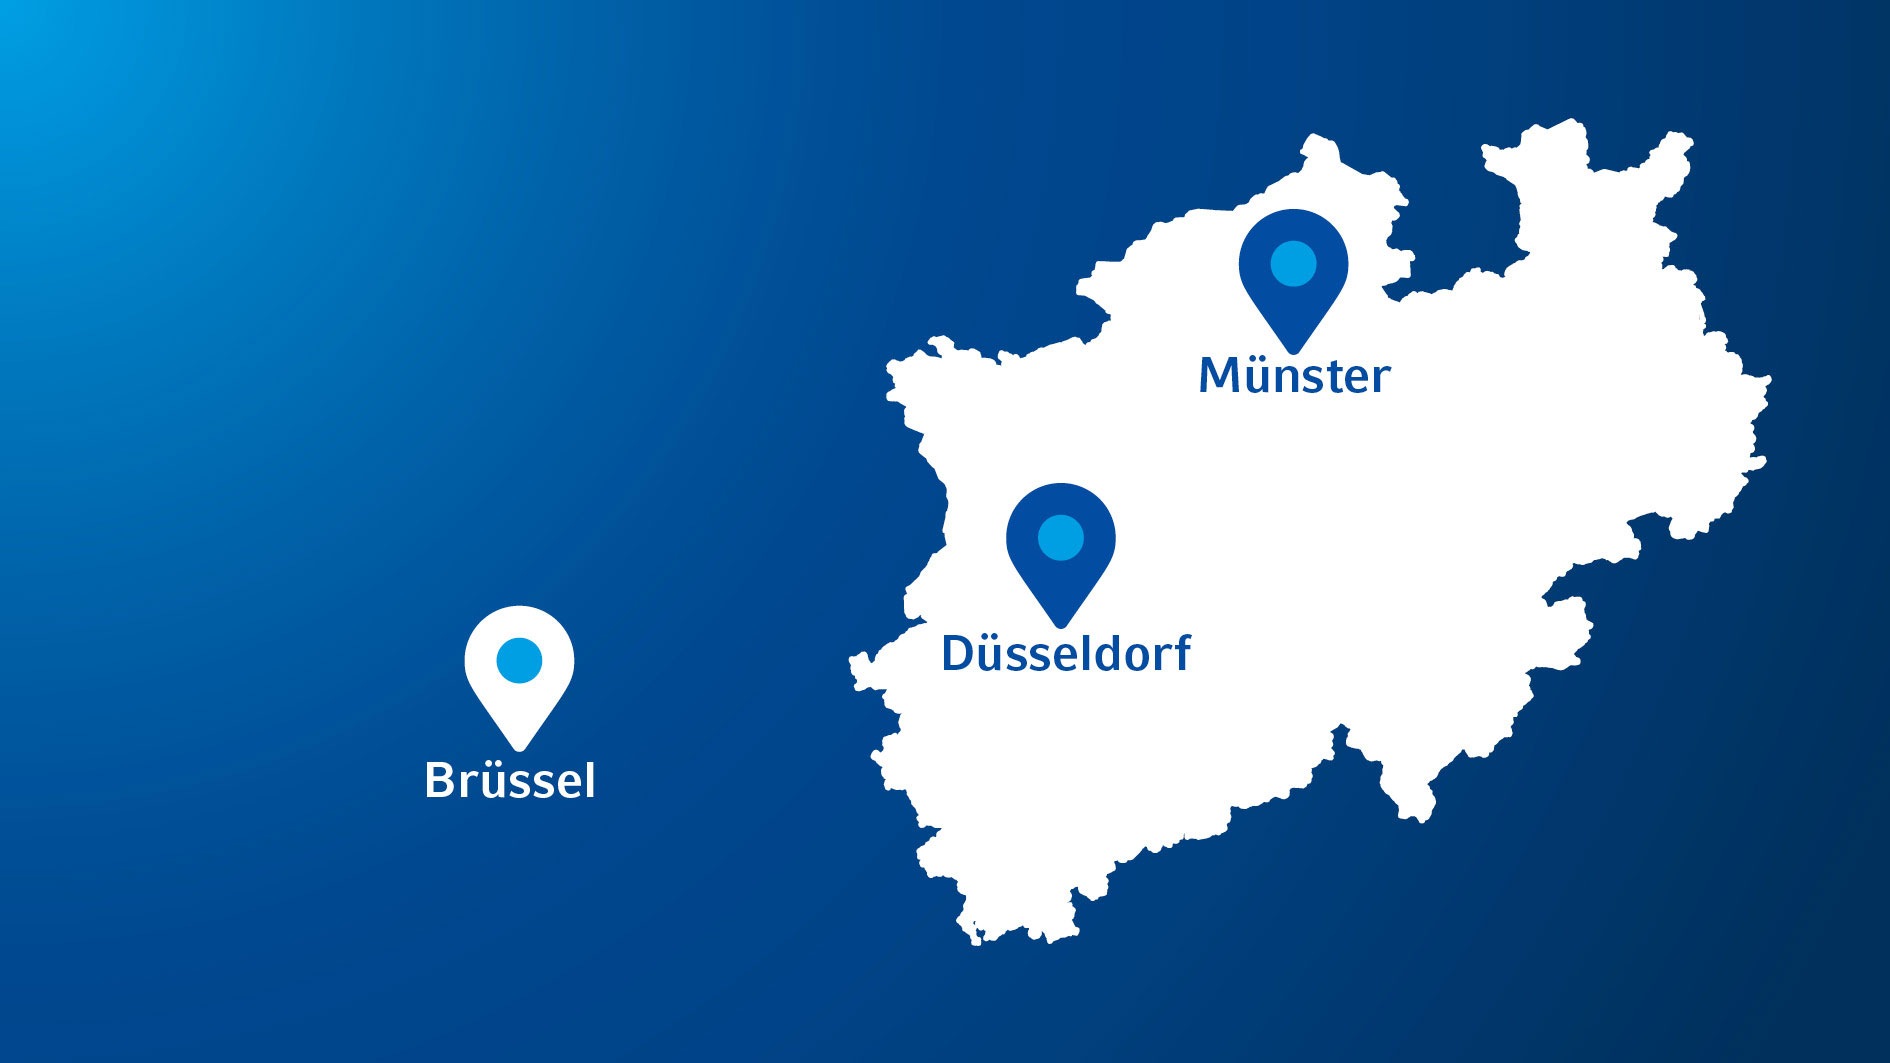 Umriss von NRW, markiert sind Düsseldorf und Münster. Außerhalb von NRW ist Brüssel markiert.